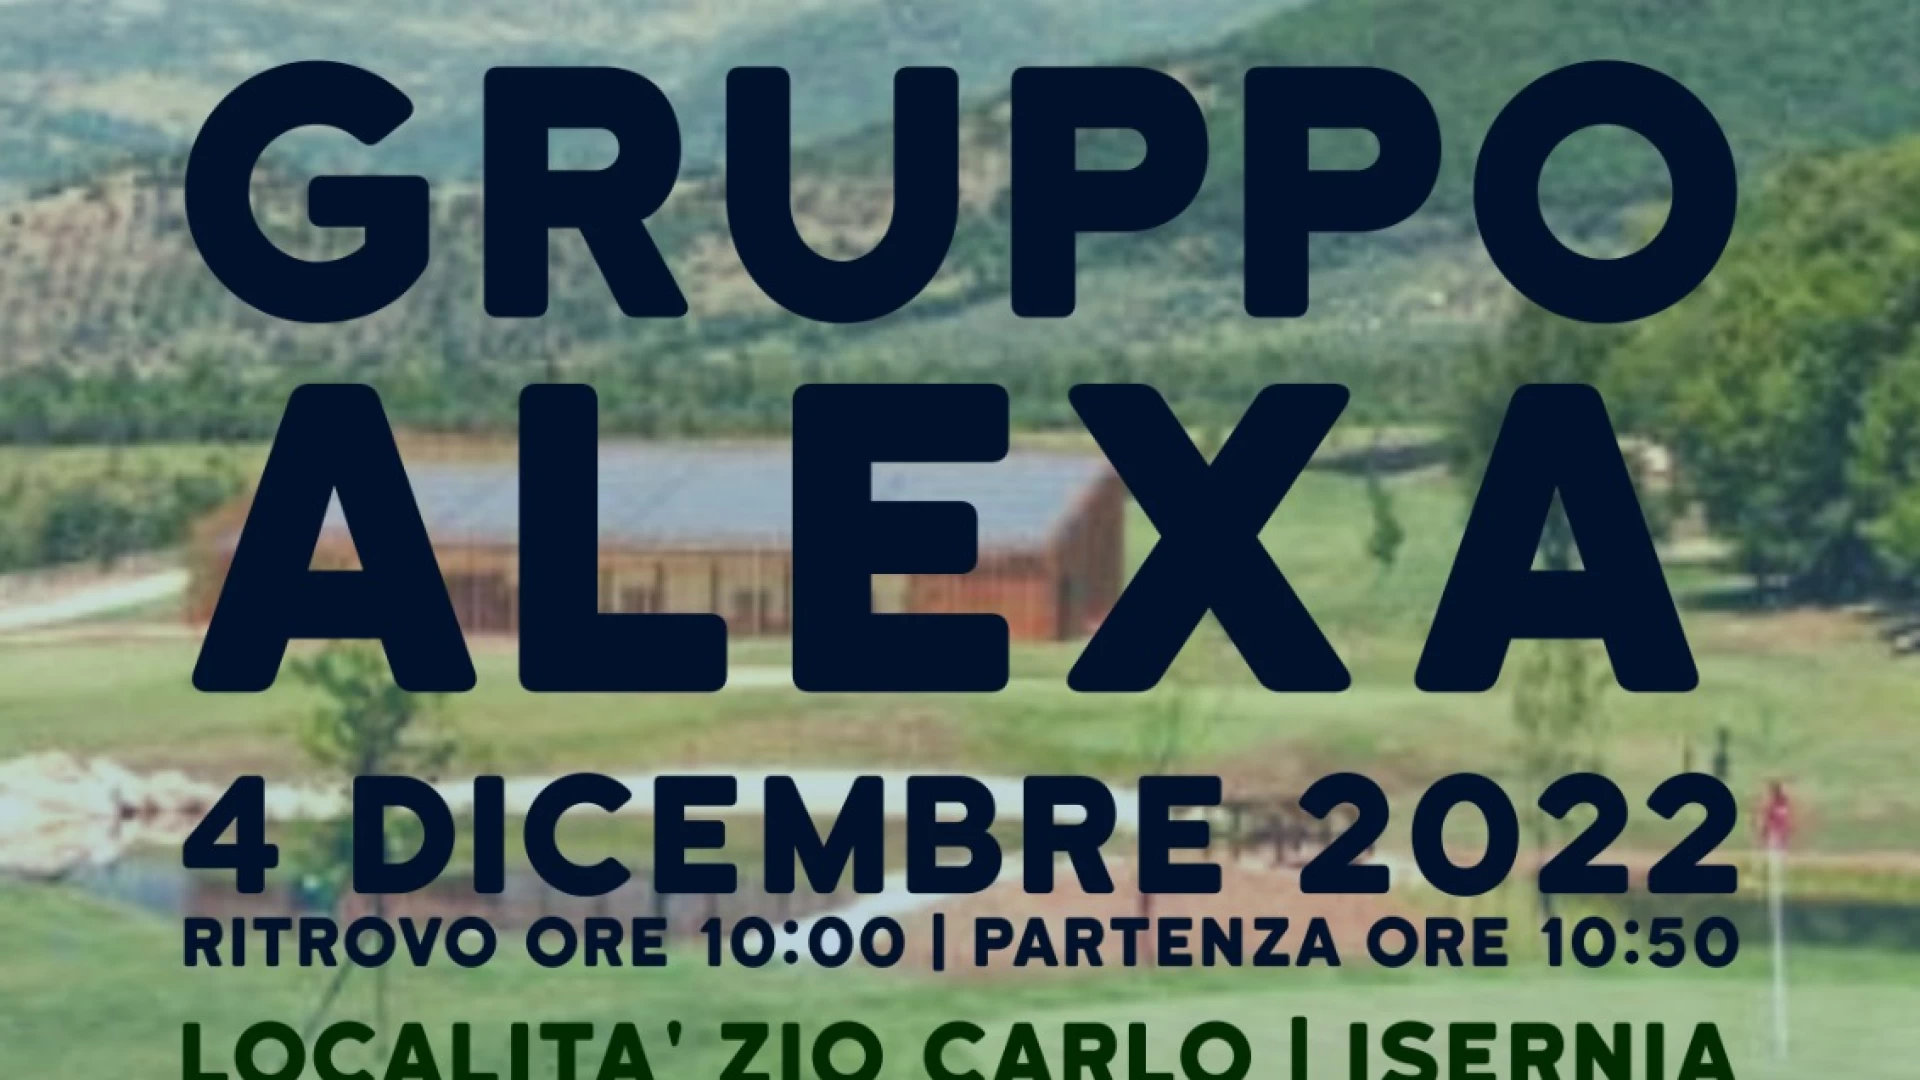 Domenica 4 dicembre in località zio Carlo a Isernia si terrà il Trofeo Gruppo Alexa di corsa campestre organizzato dalla NAI.